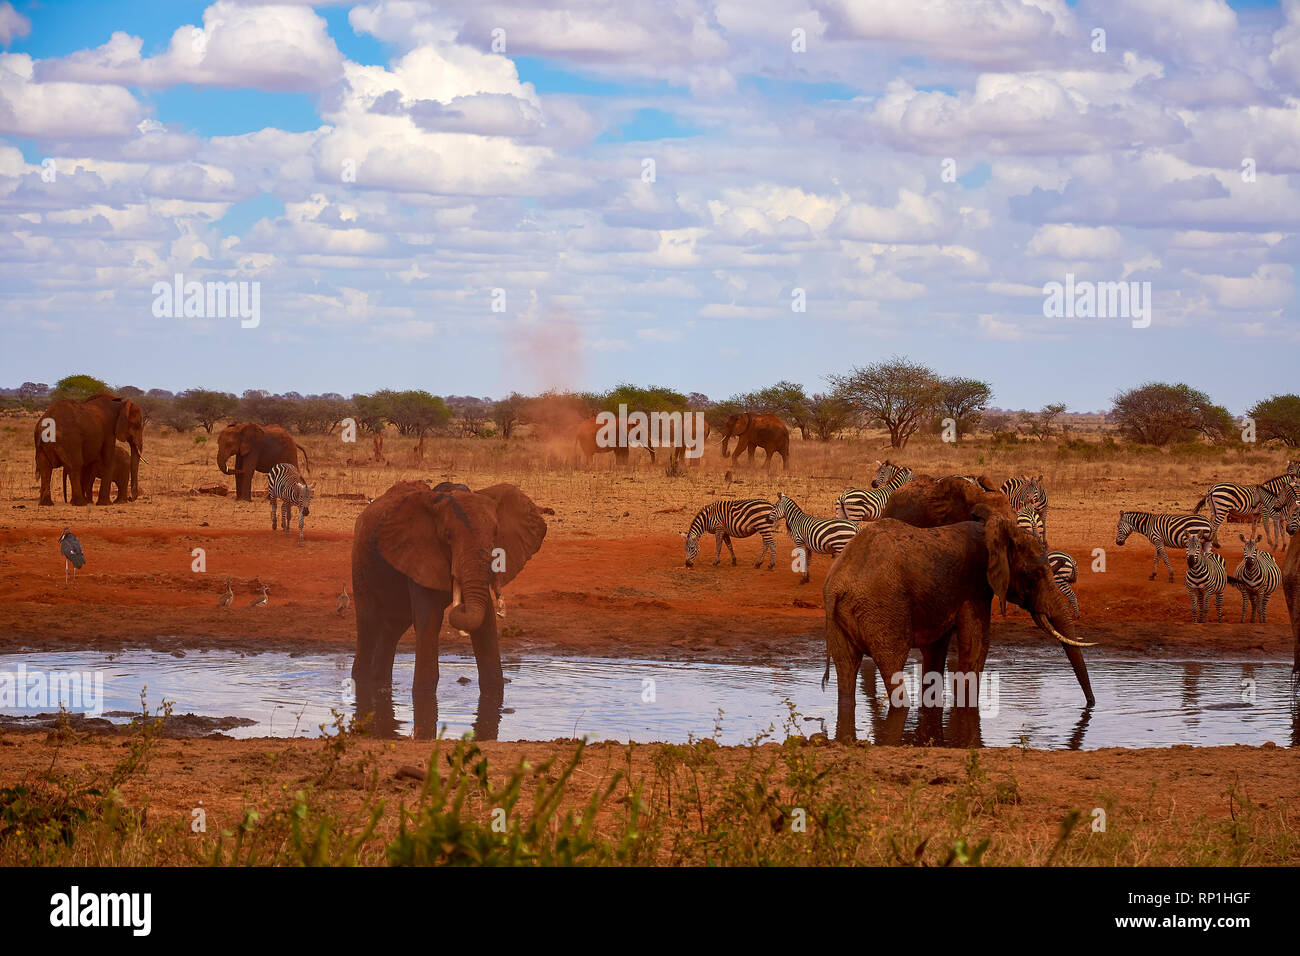 Voir d'une famille d'éléphants et de zèbres. Étang de l'eau dans le parc national de Tsavo au Kenya, Afrique. Ciel bleu avec des nuages et de sable rouge. Banque D'Images